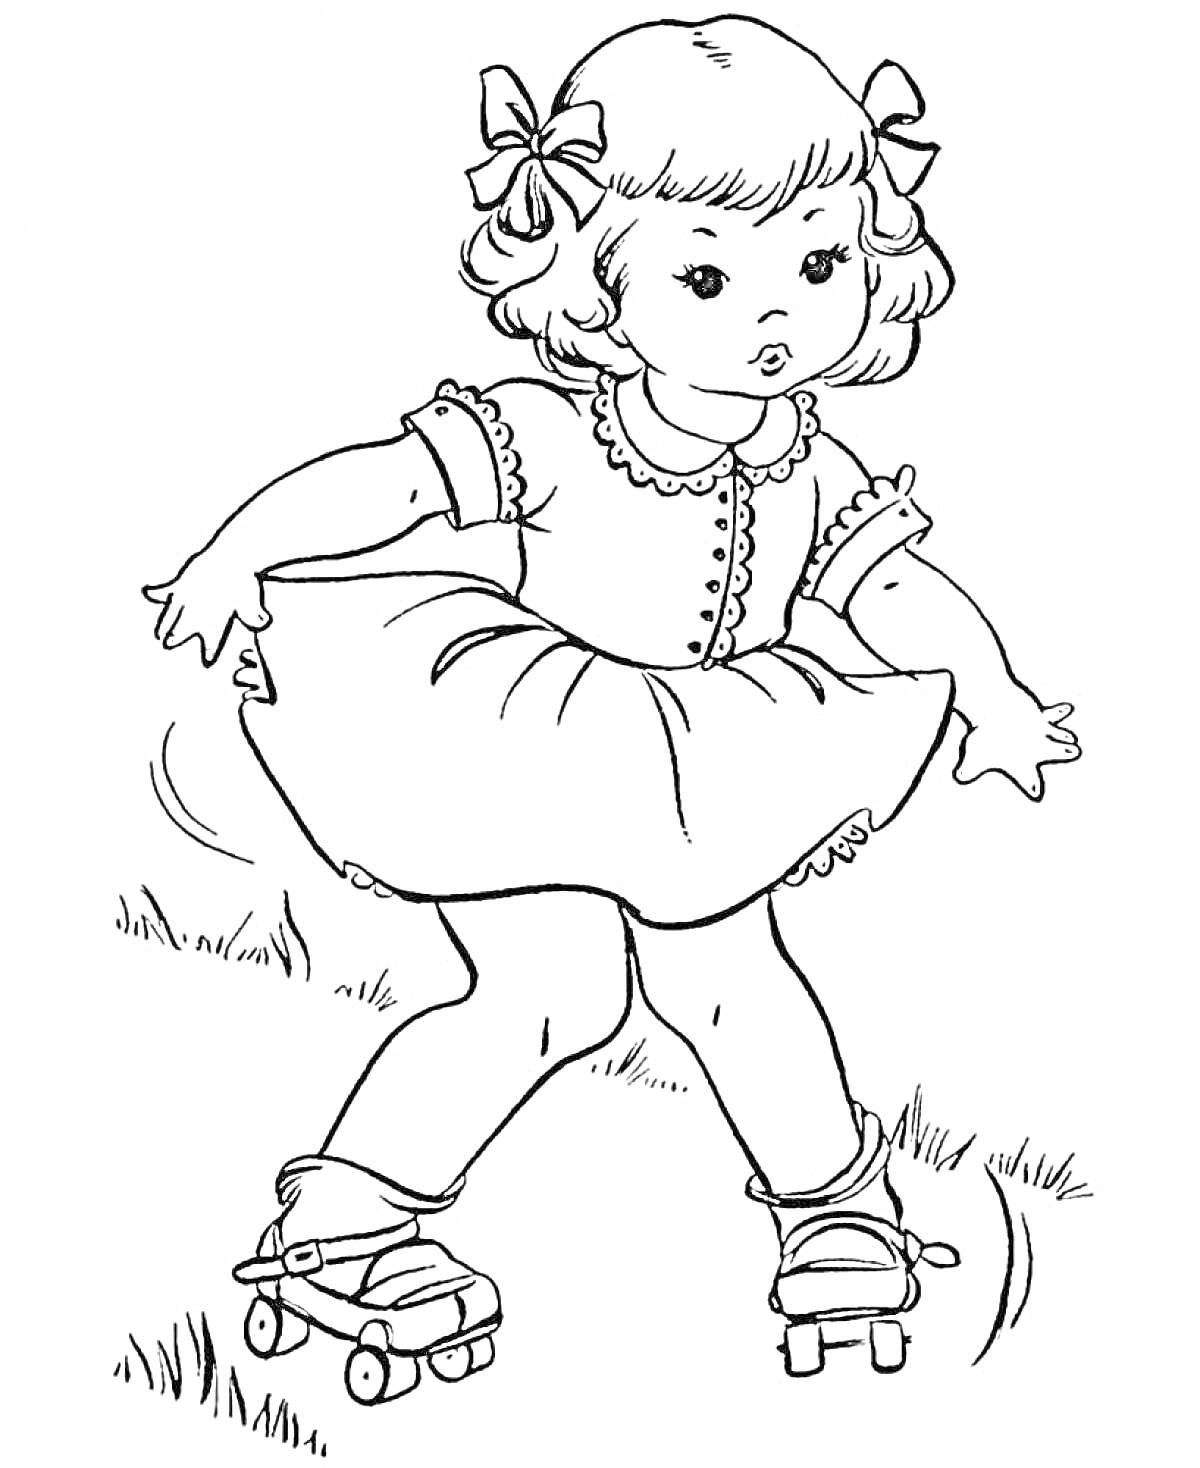 Раскраска Девочка на роликах, катающаяся по траве, в платье с бантиками